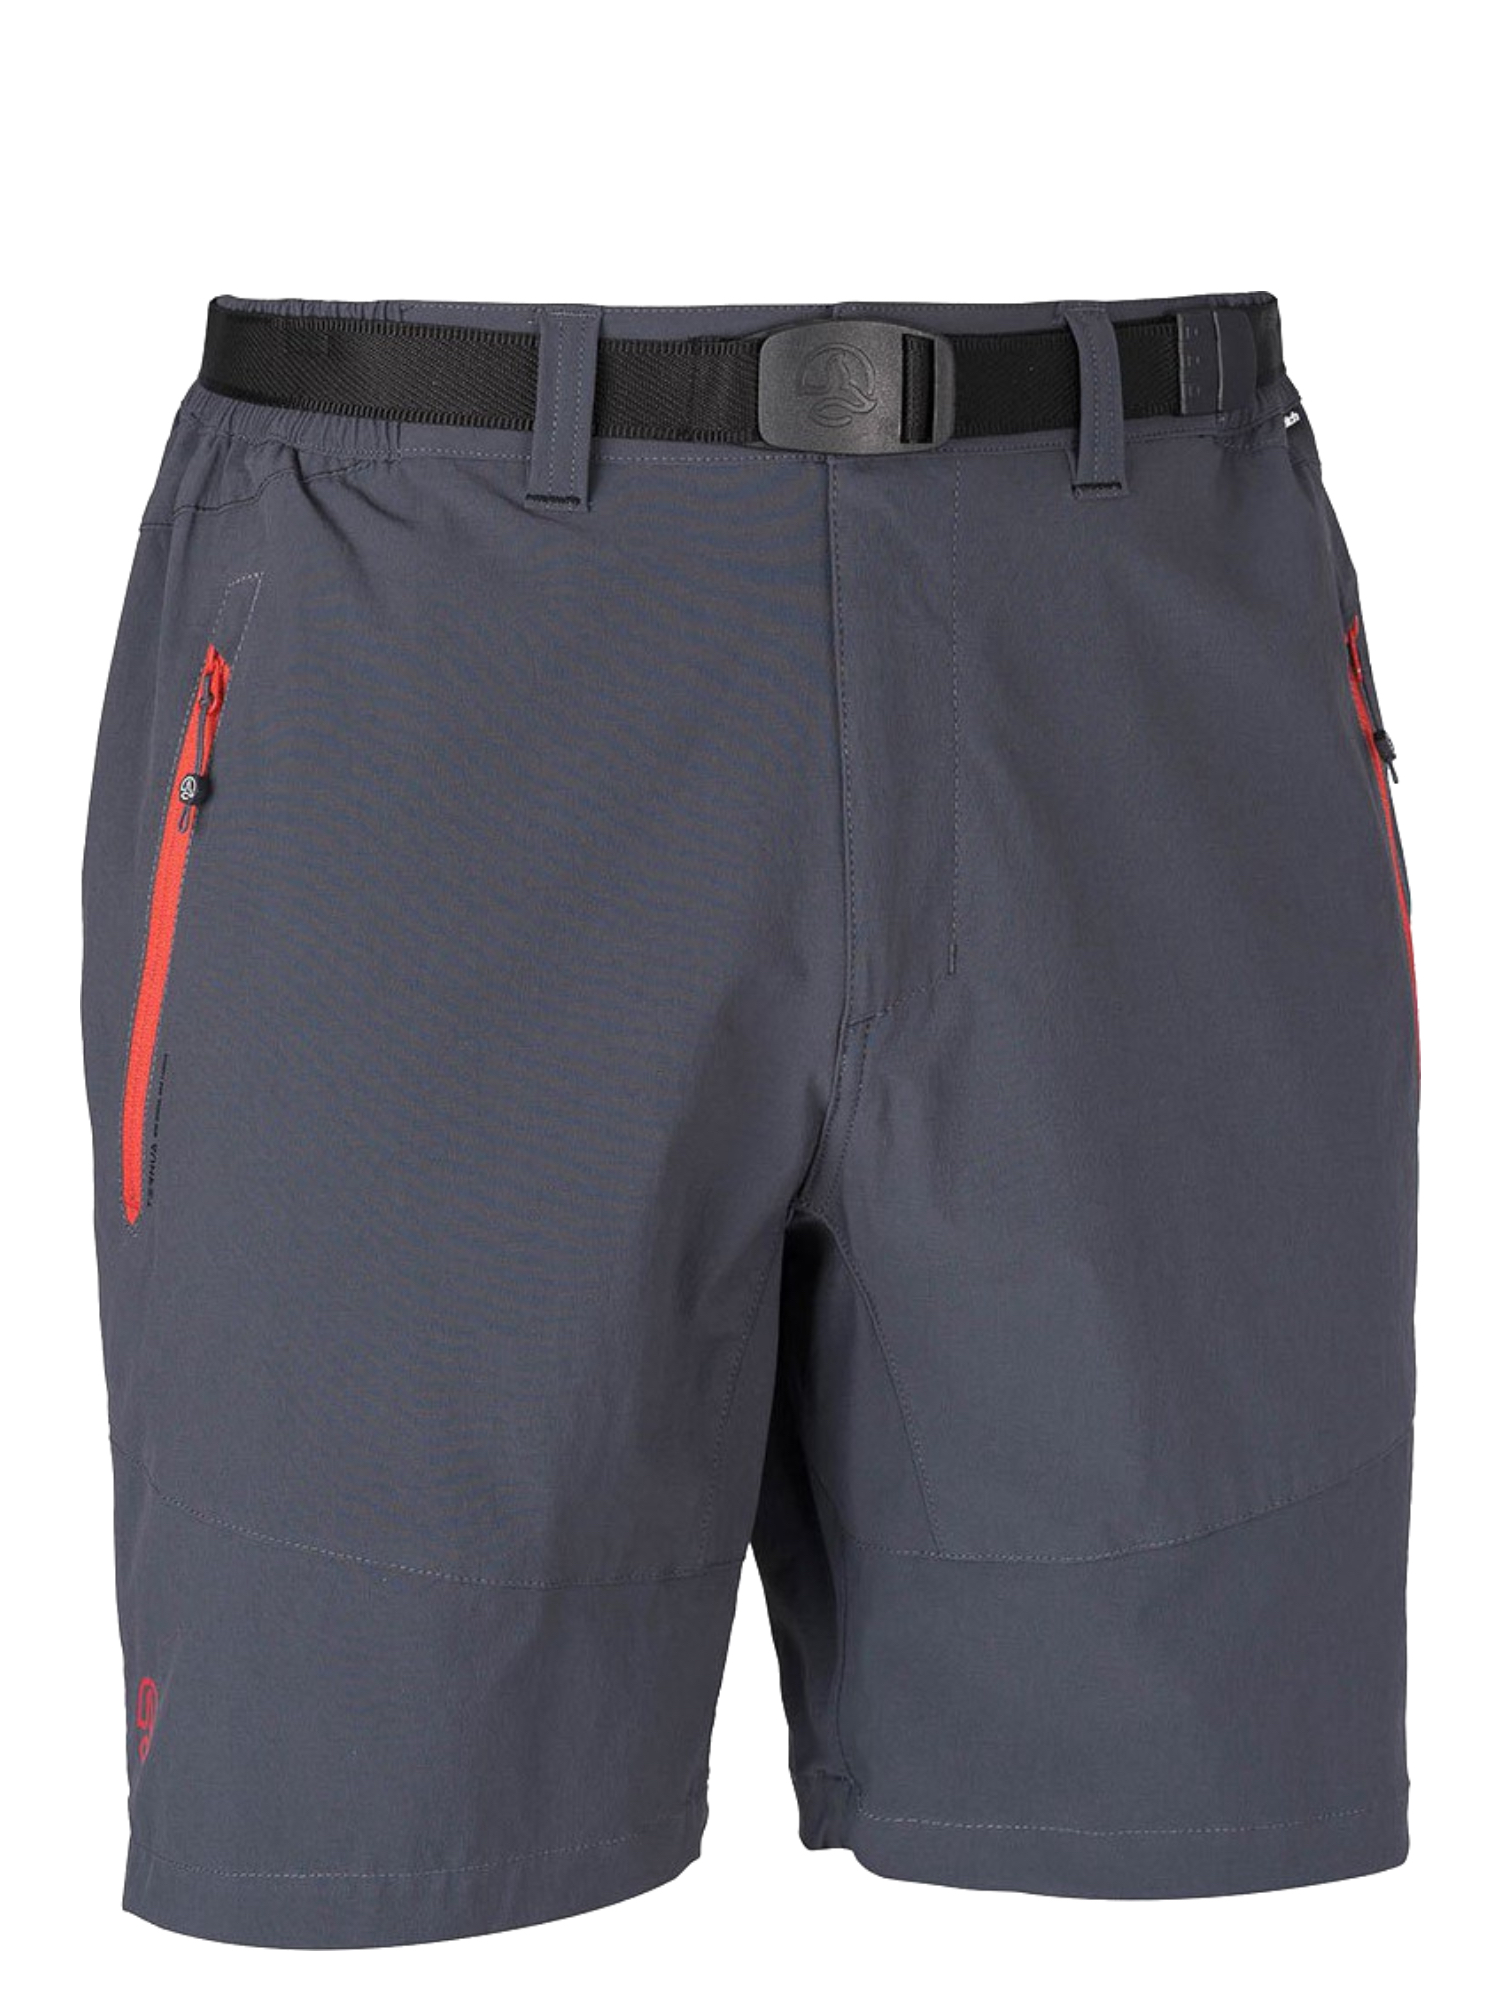 Спортивные шорты мужские Ternua Friz Sht M серые S